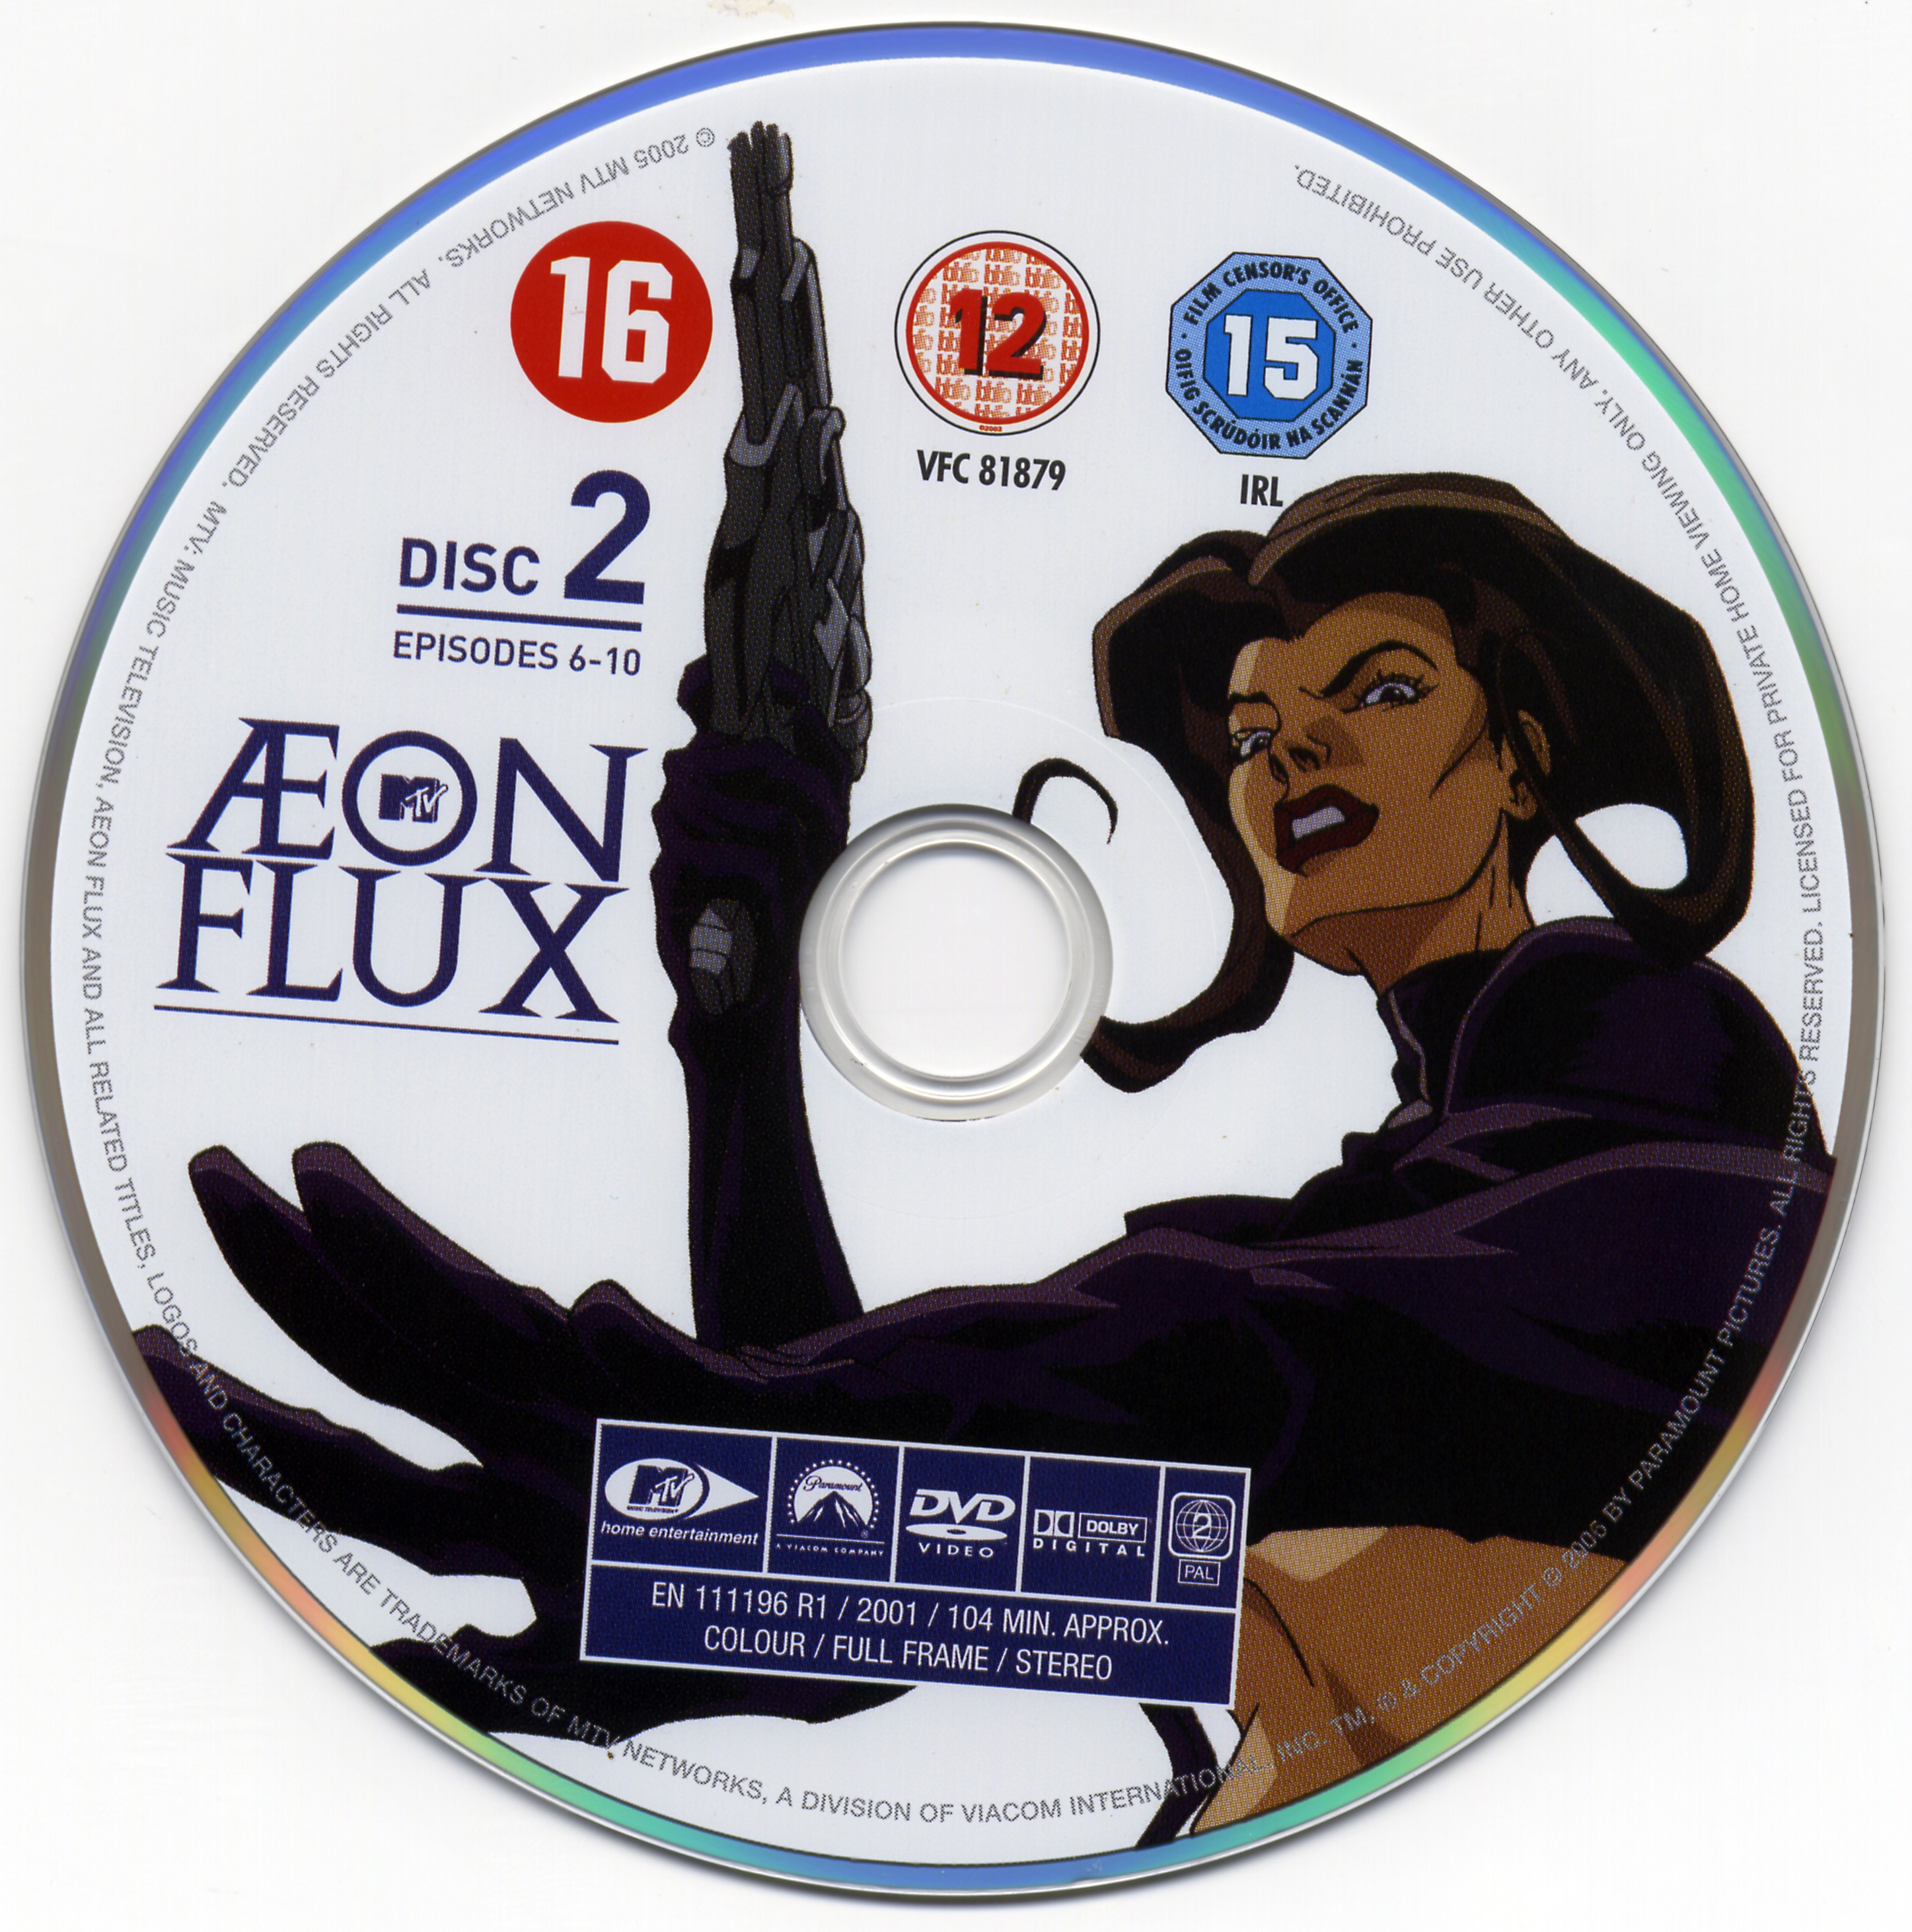 Aeon flux DVD 2